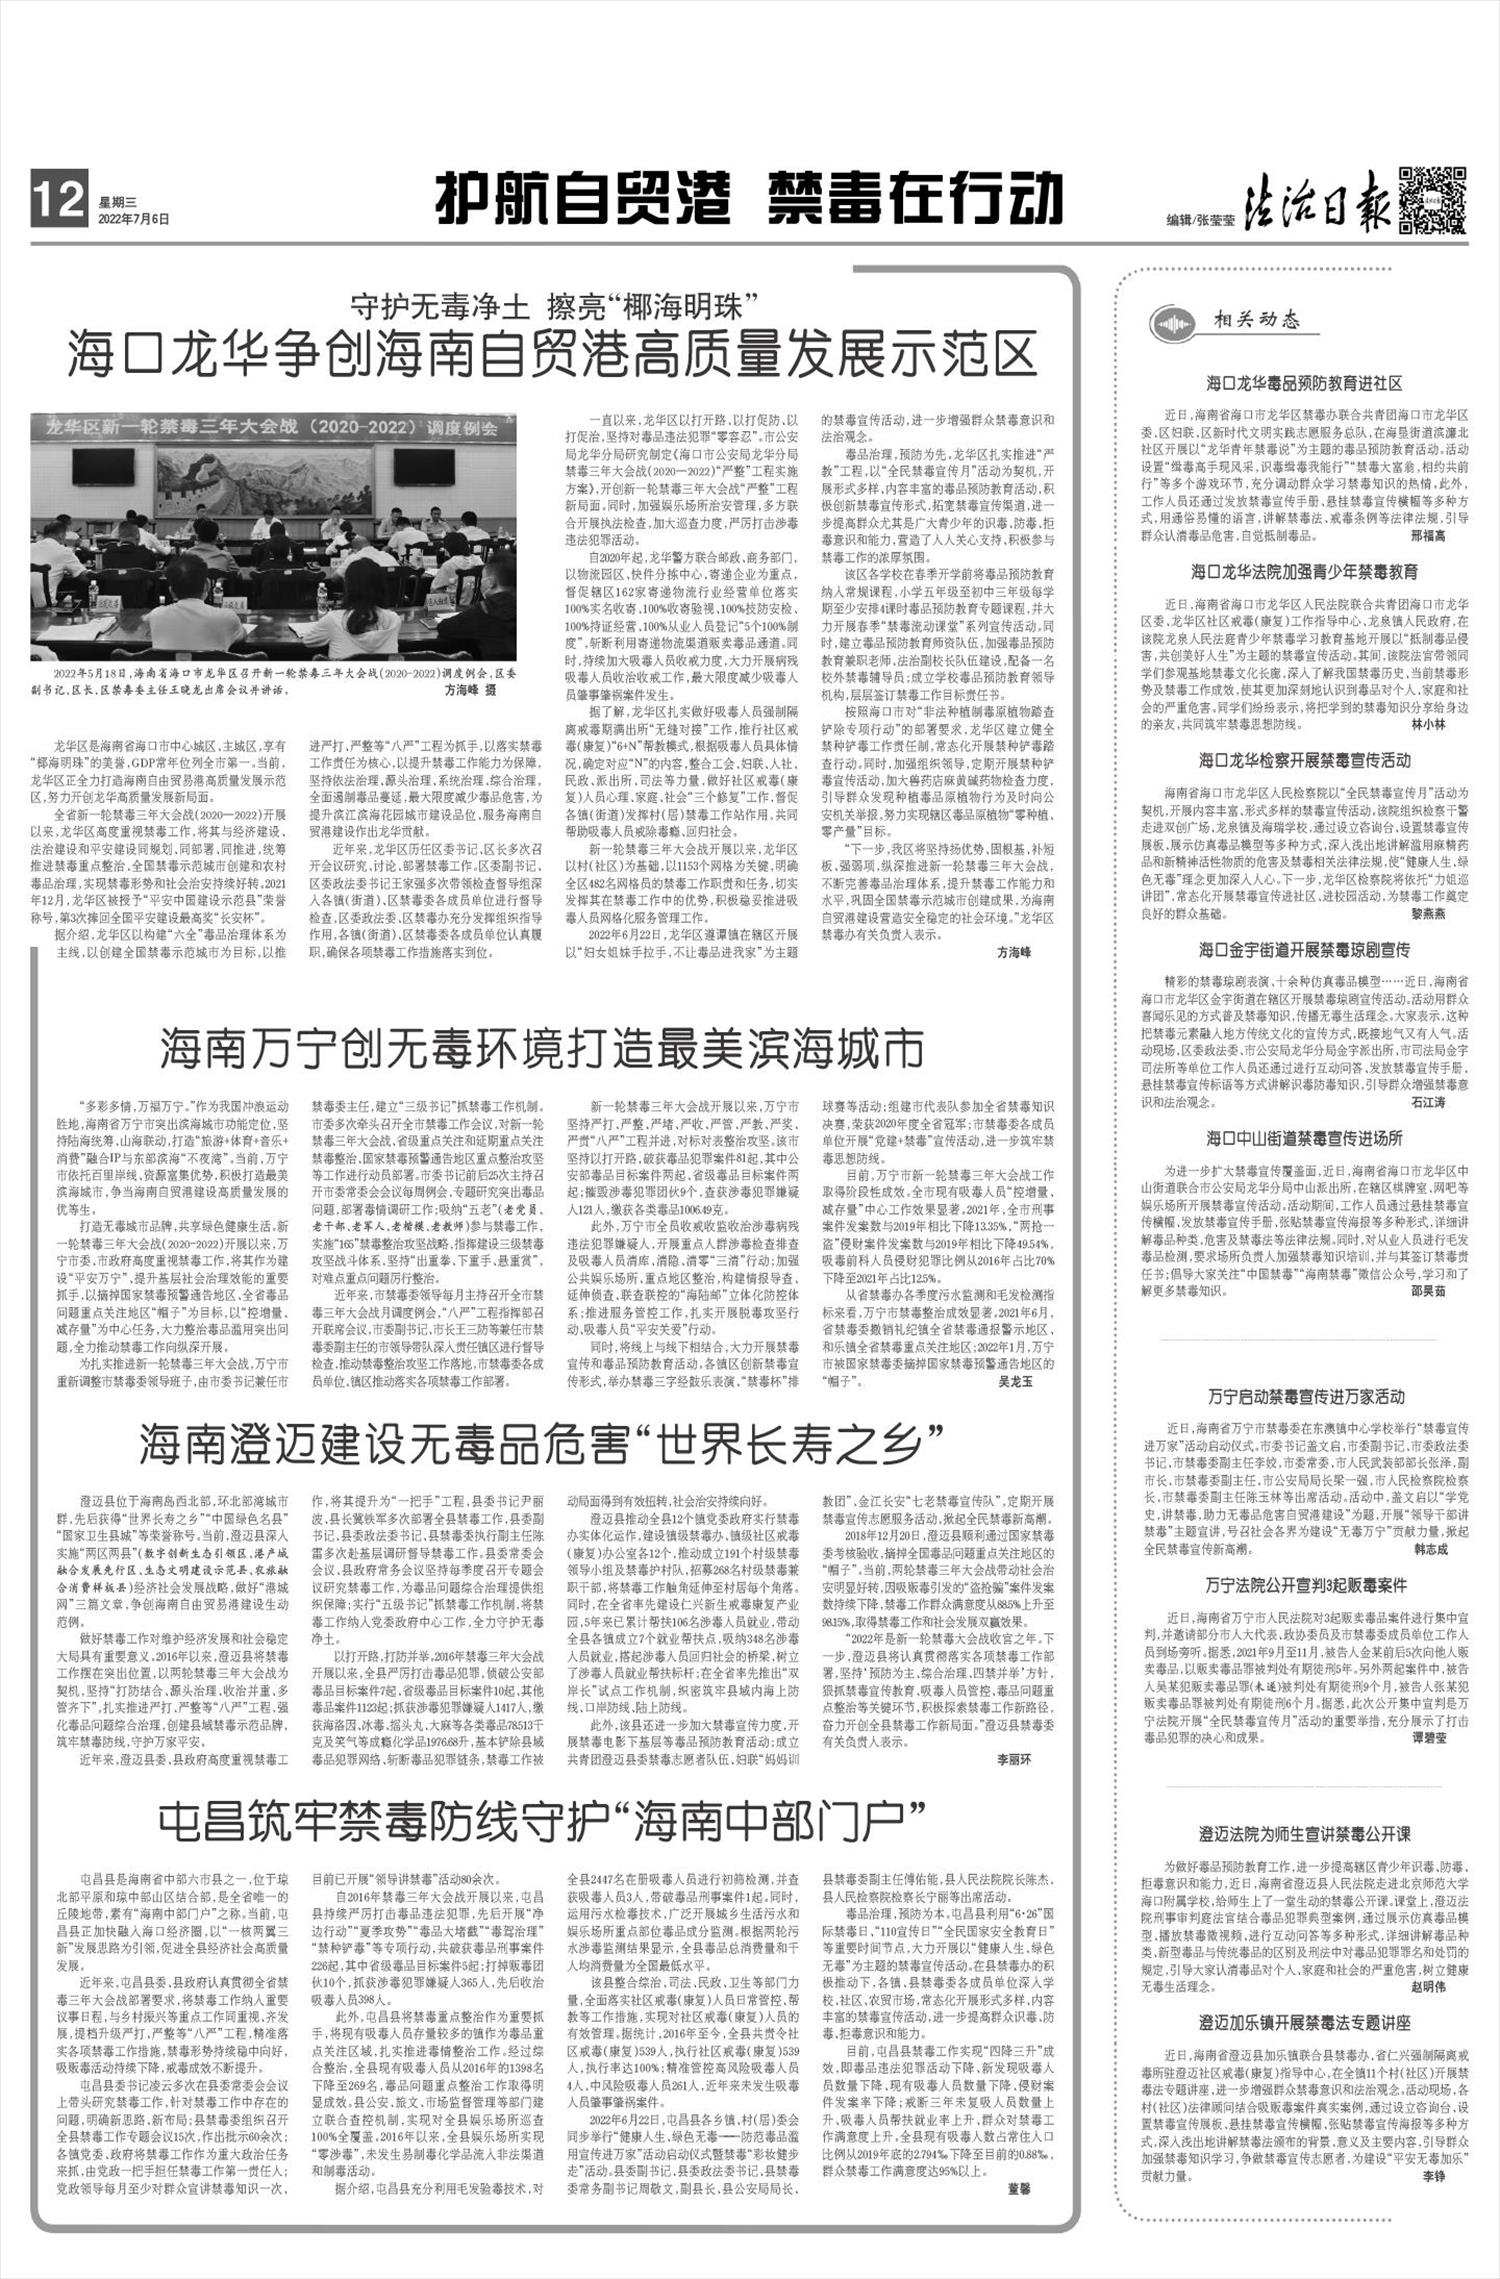 上海毖莹信息科技有限公司